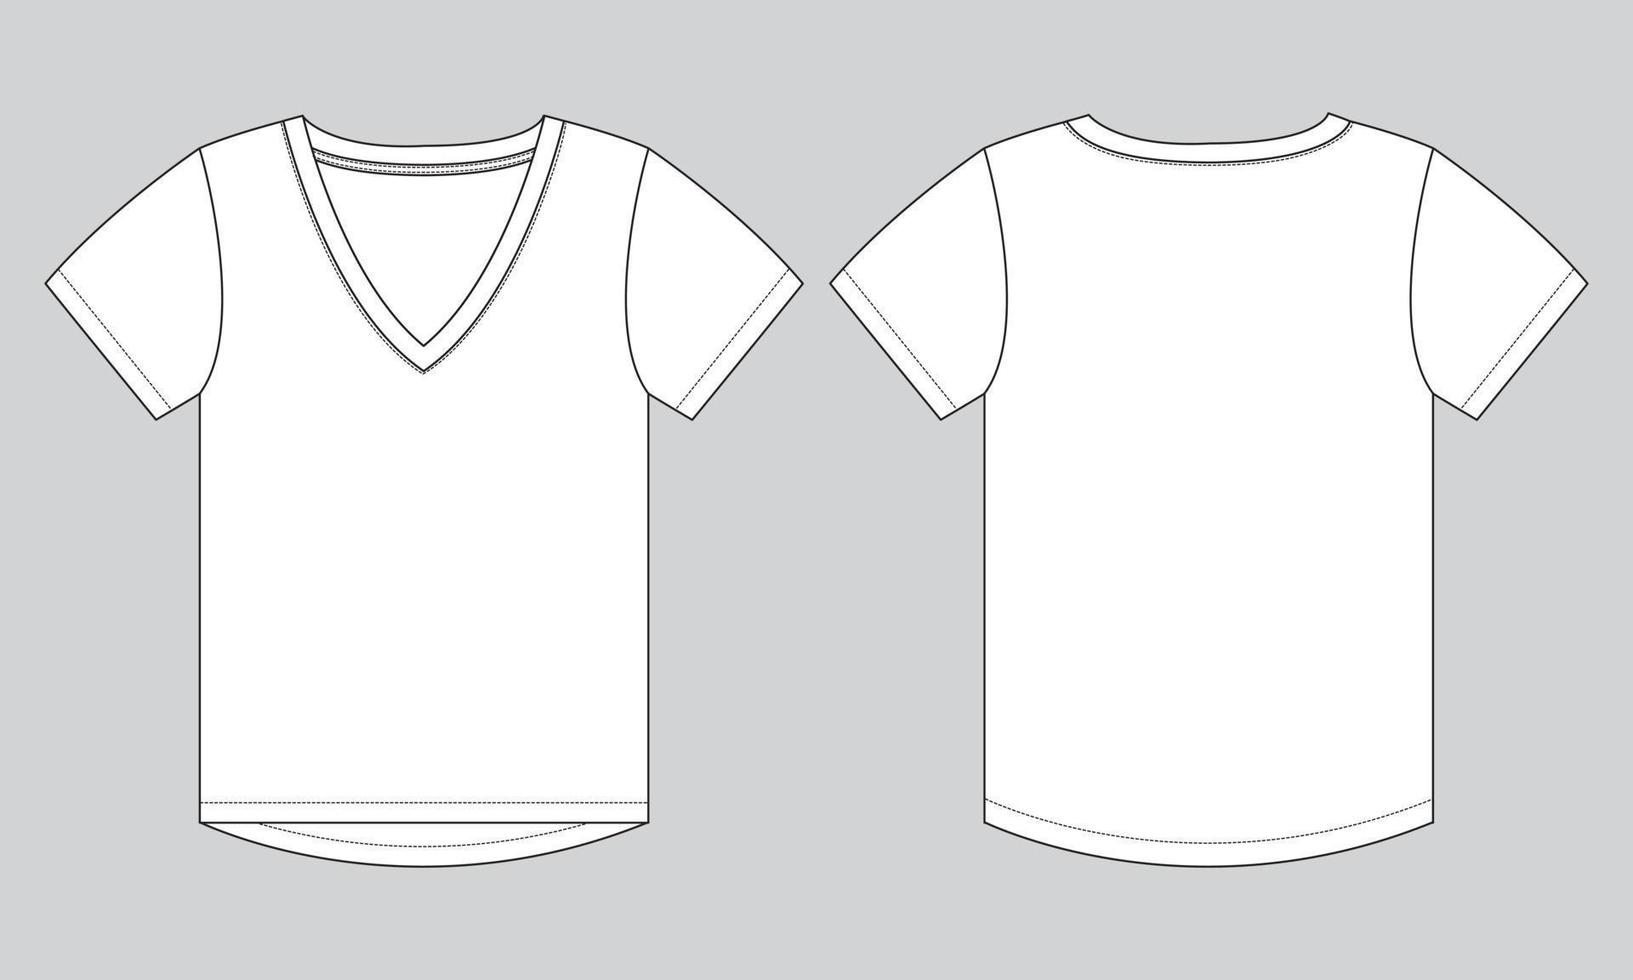 Modelo de ilustração vetorial de desenho plano de moda técnica com decote em v de manga curta para mulheres. vetor